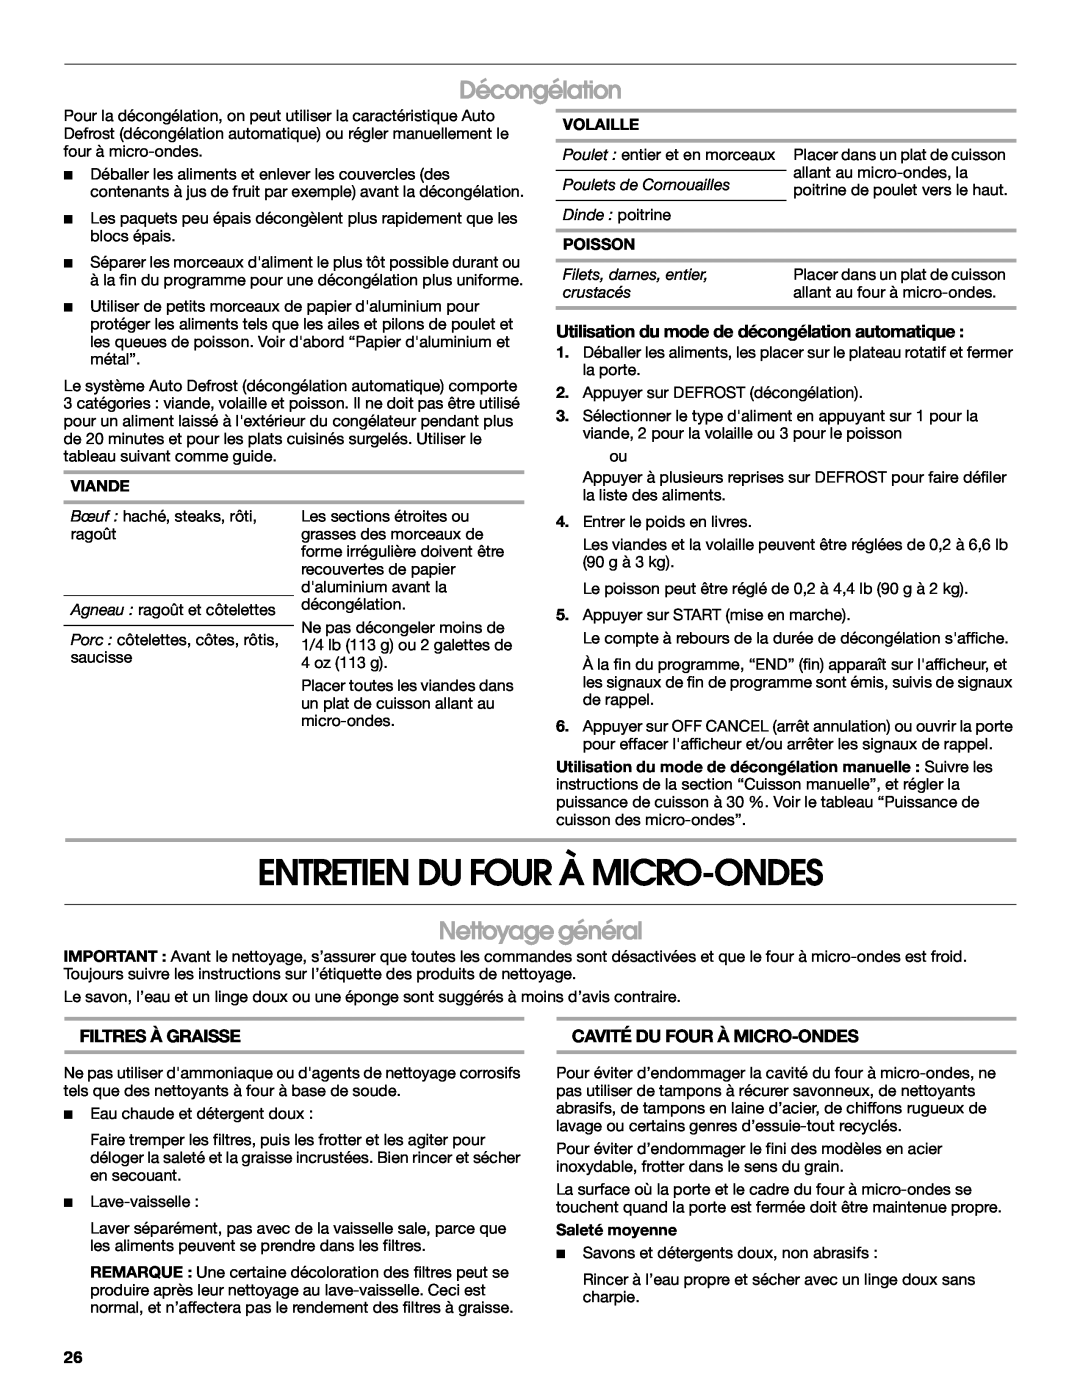 IKEA IMH16, IMH15 manual Entretien Du Four À Micro-Ondes, Décongélation, Nettoyage général, Filtres À Graisse, Poisson 